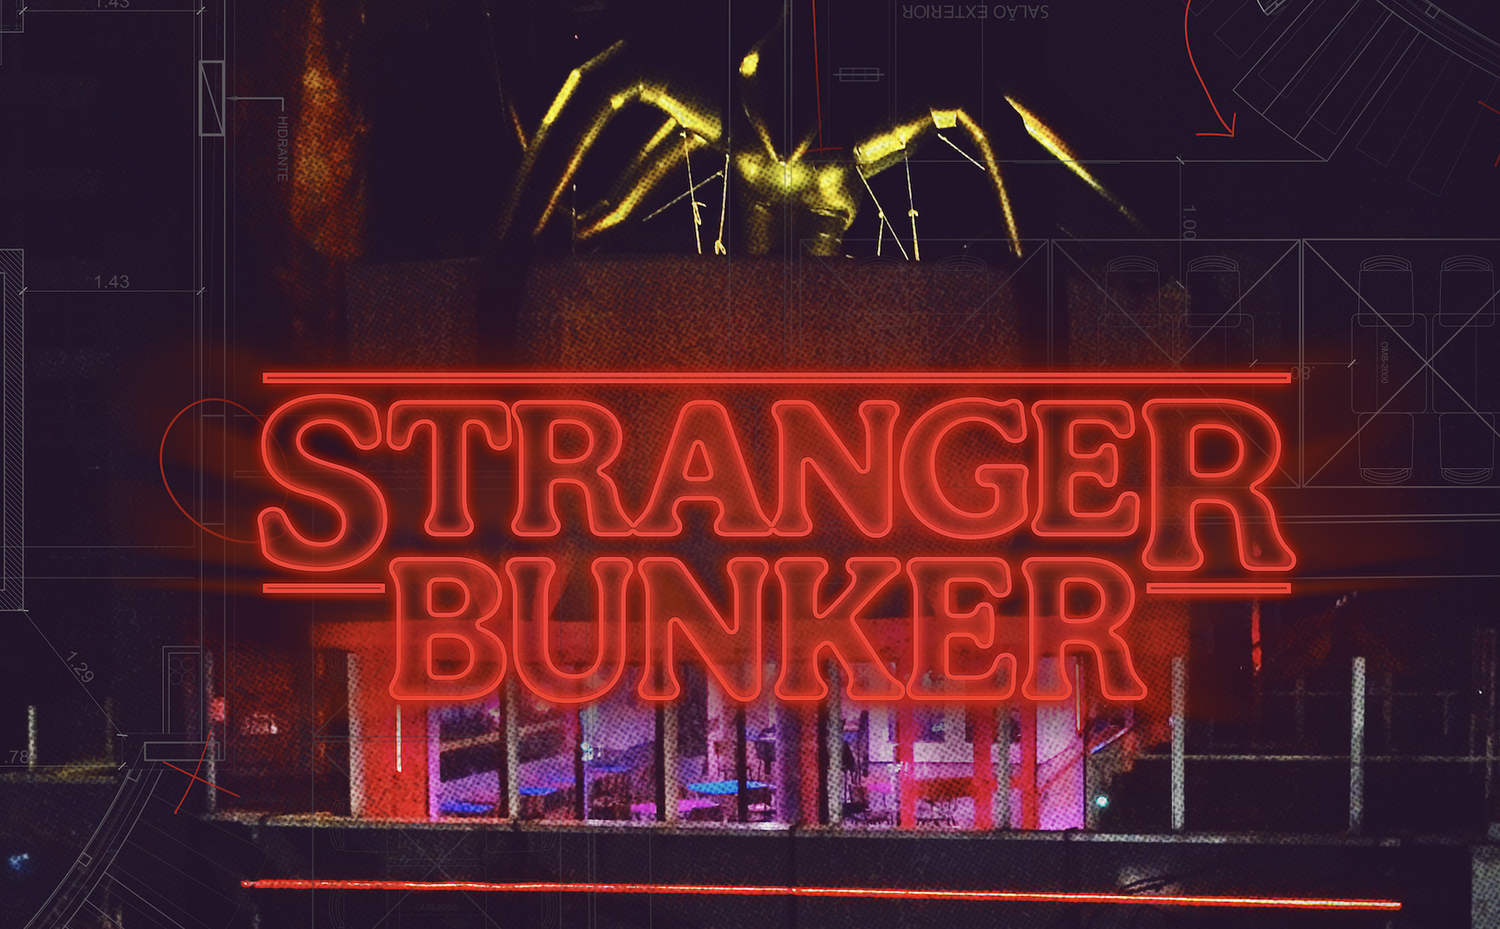 Netflix Stranger Bunker